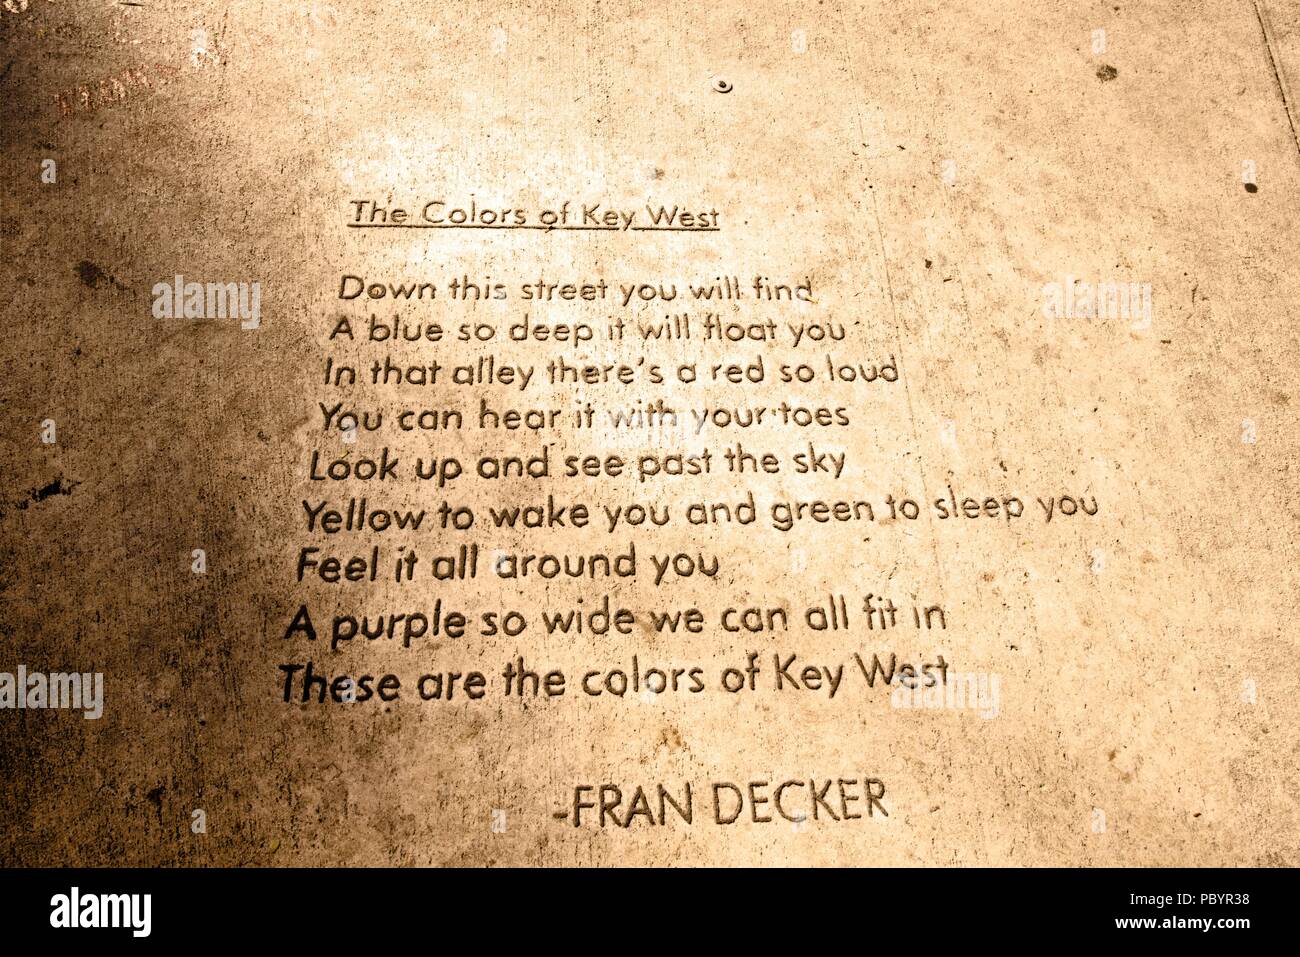 Una immagine di una poesia scritta da Fran Decker incisi in un marciapiede di Key West, Florida come parte di un ramo in luoghi pubblici di poesia progetto. Foto Stock